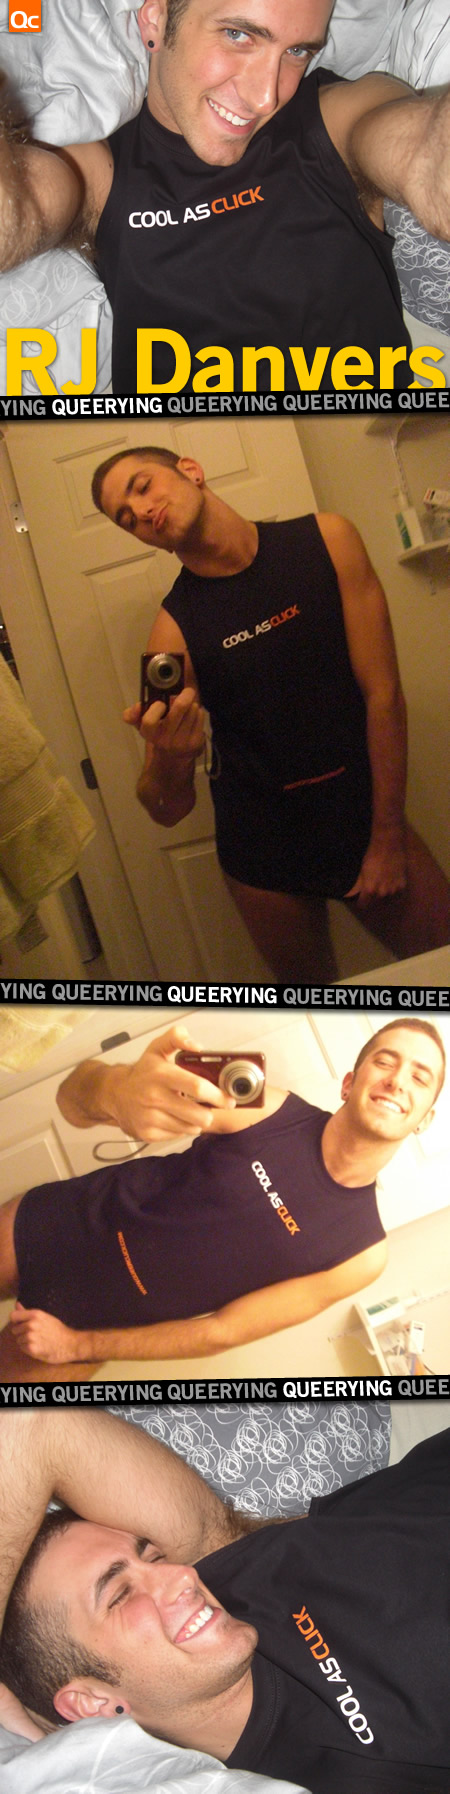 Queerying RJ Danvers